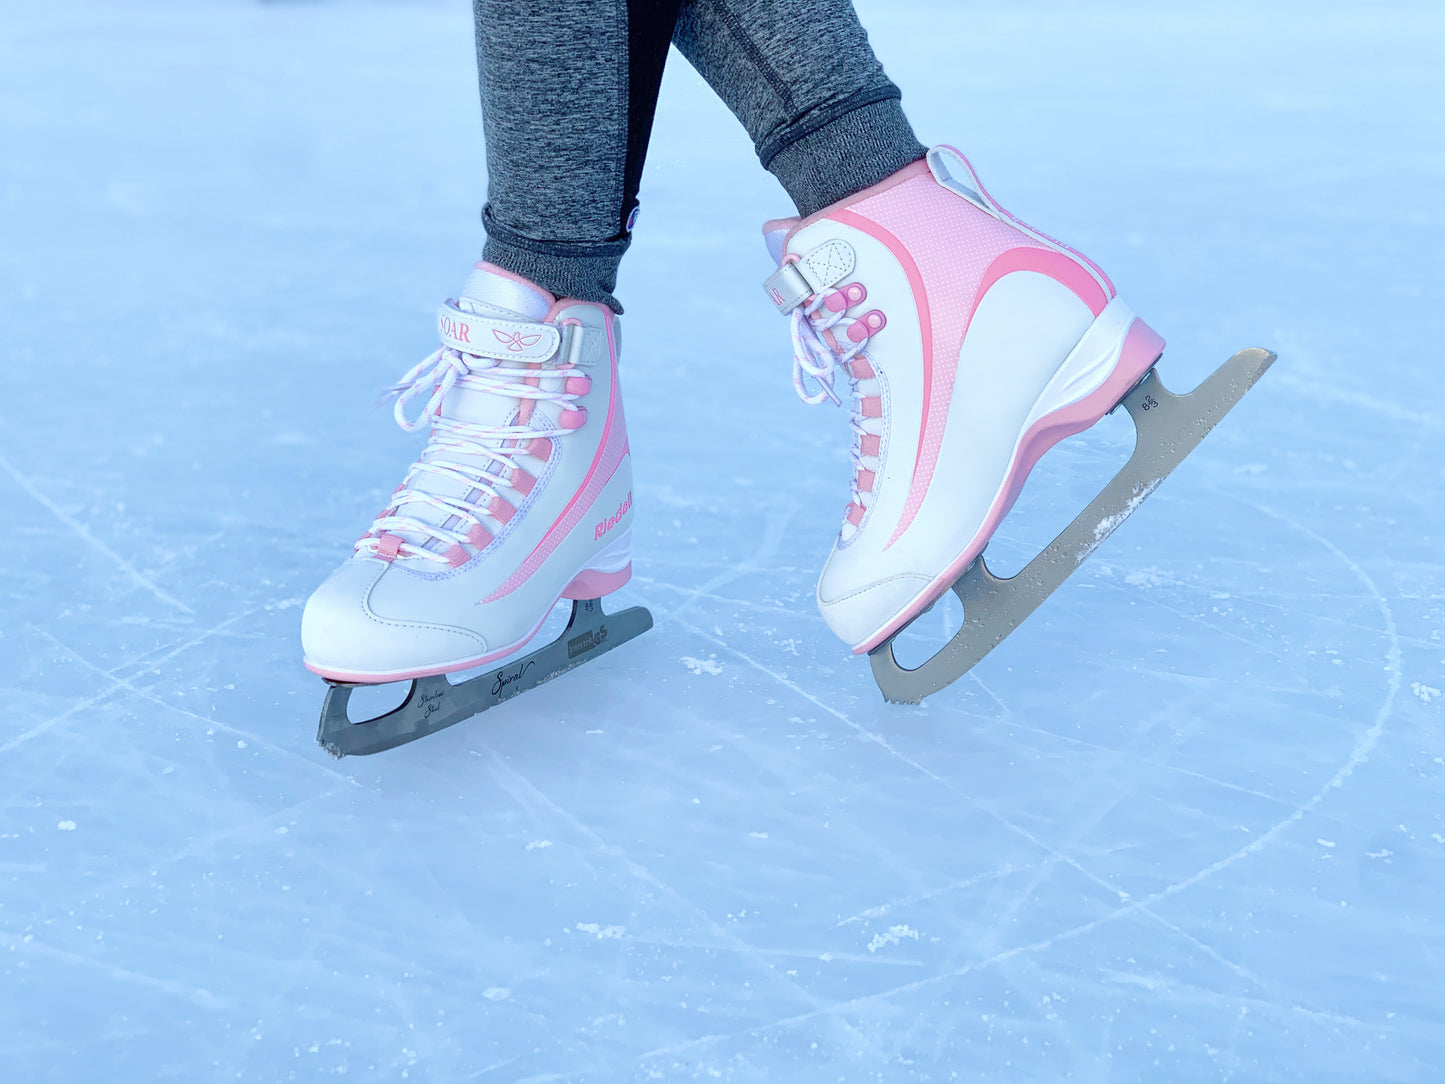 Riedell 615 Soar Pink Junior Size Soft Skate